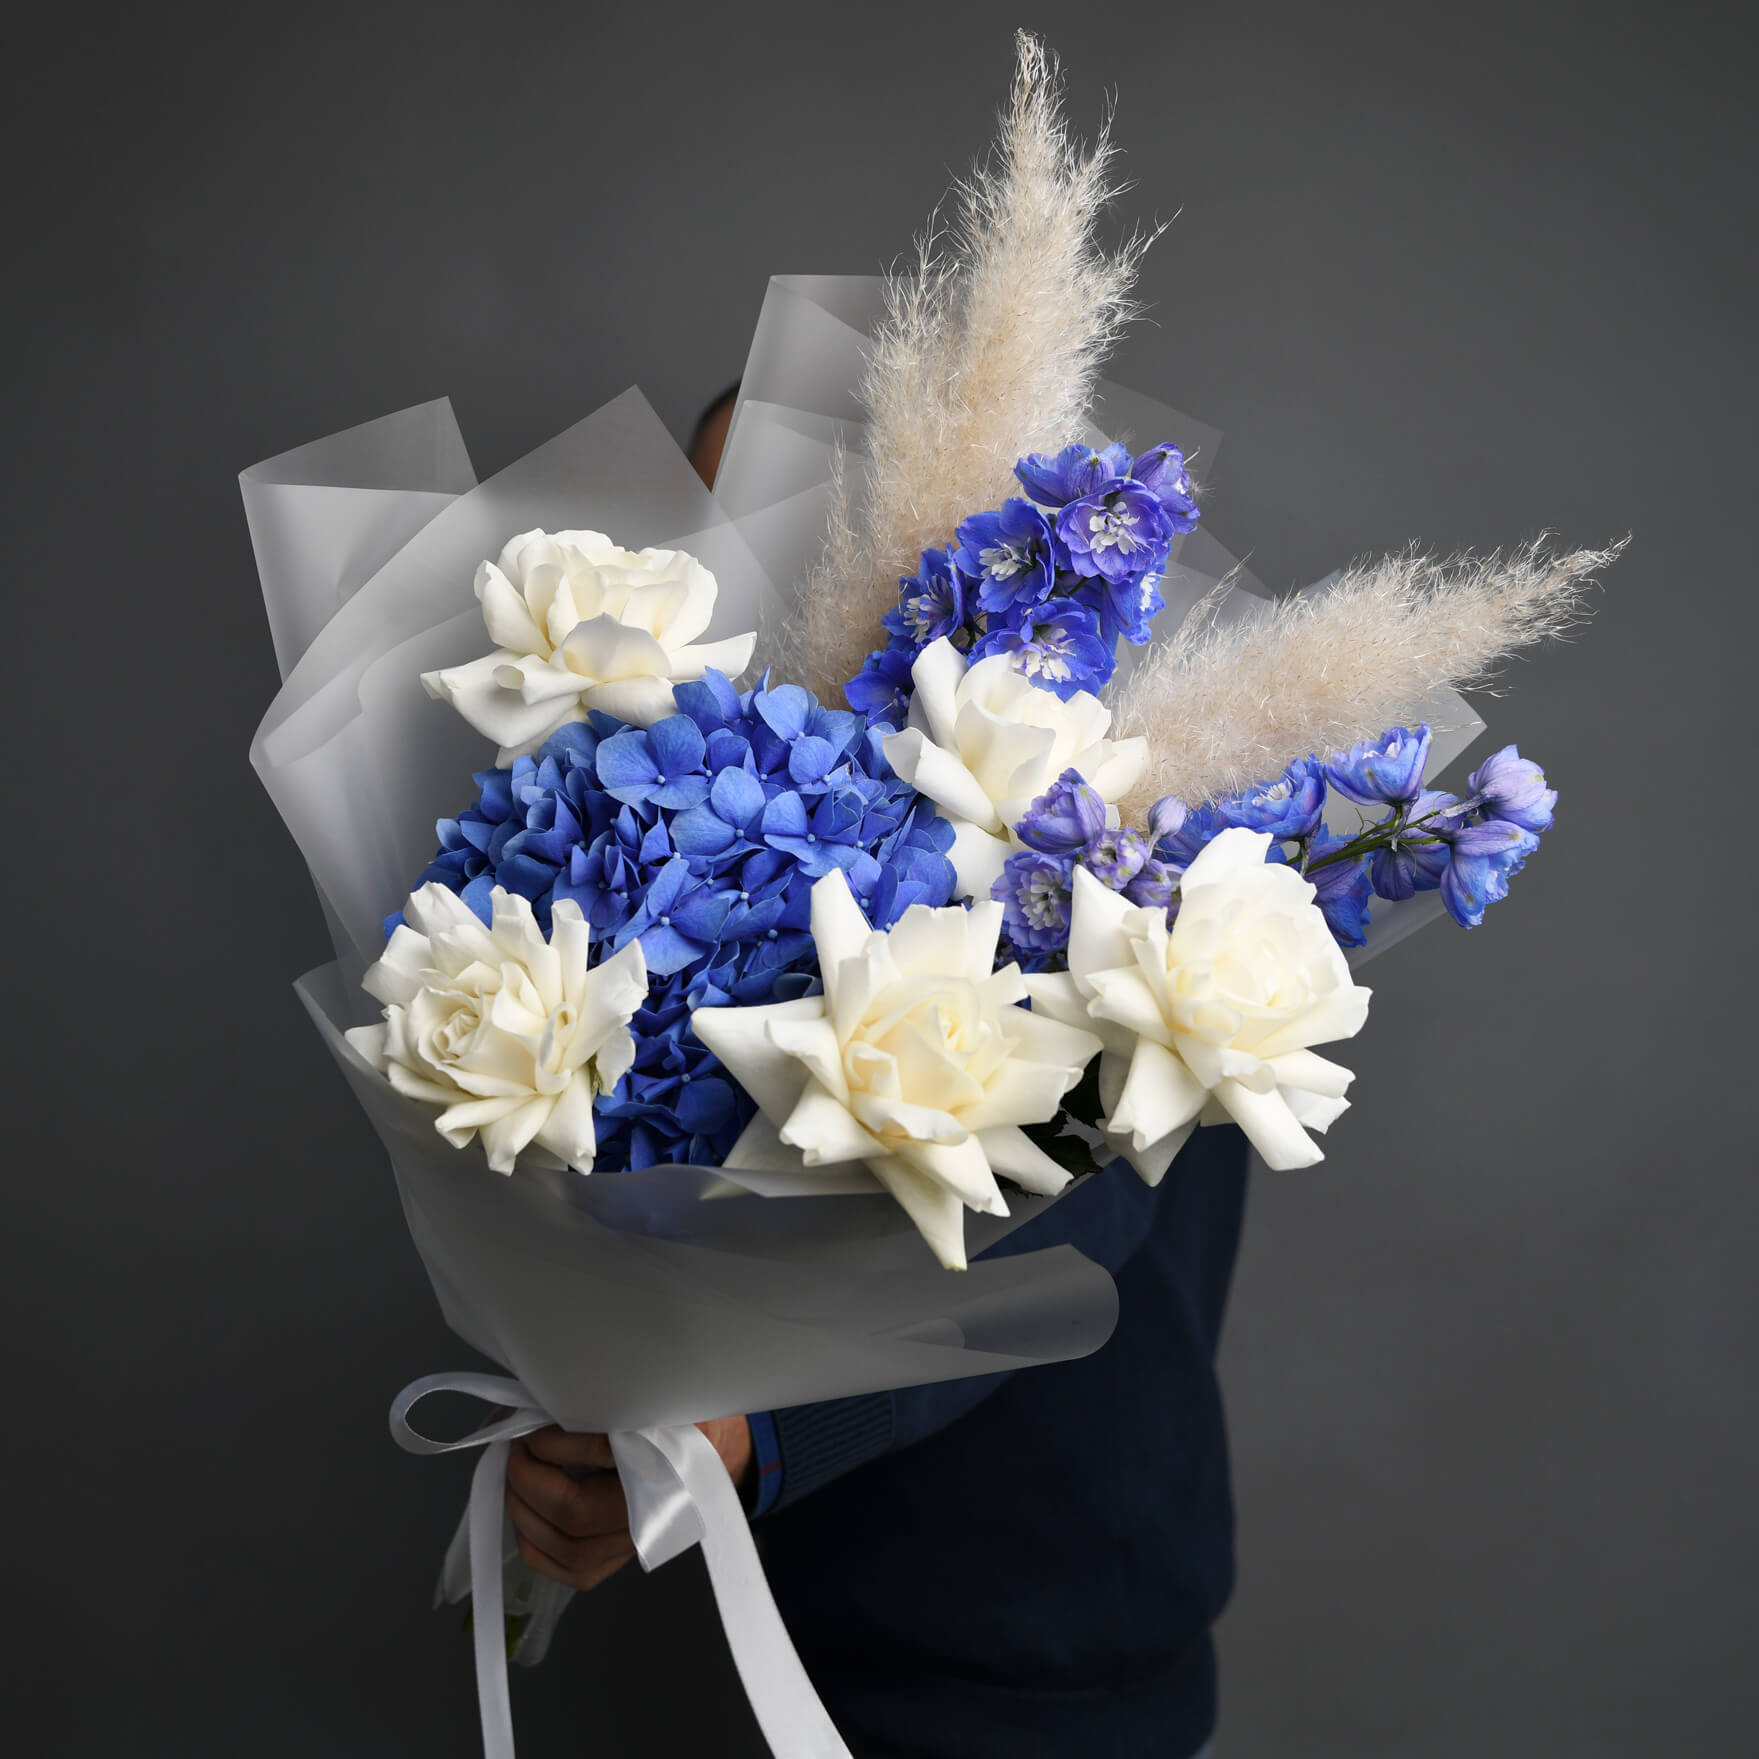 Buchet cu hortensie albastra si delphinium